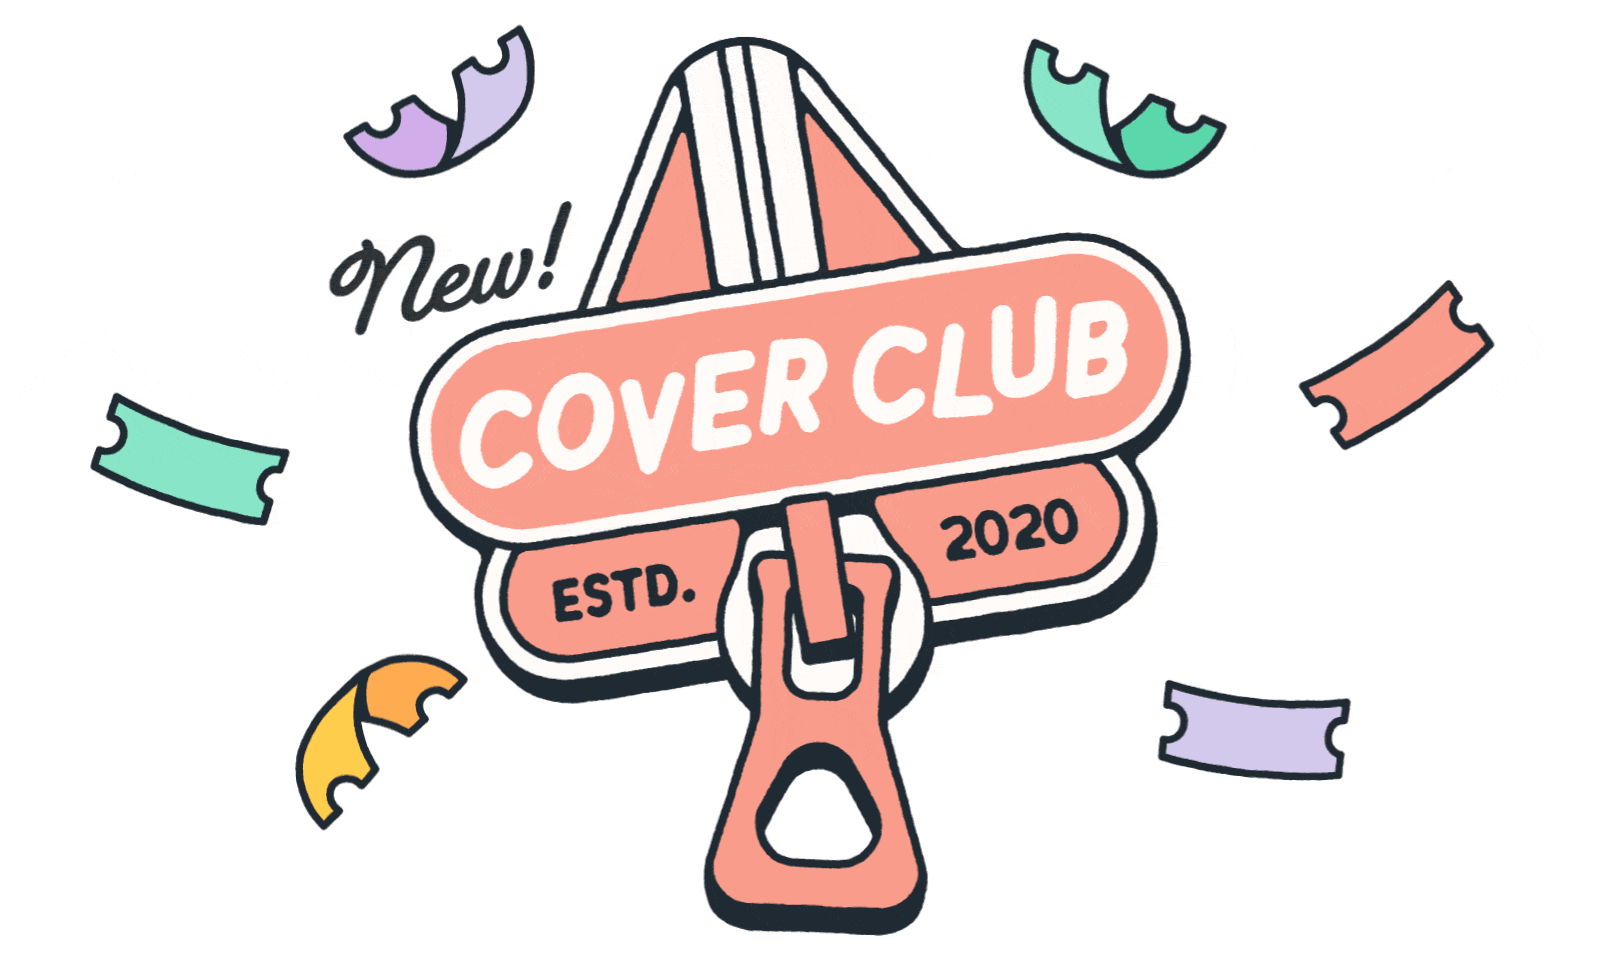 Logo: New! Cover Club estd. 2020